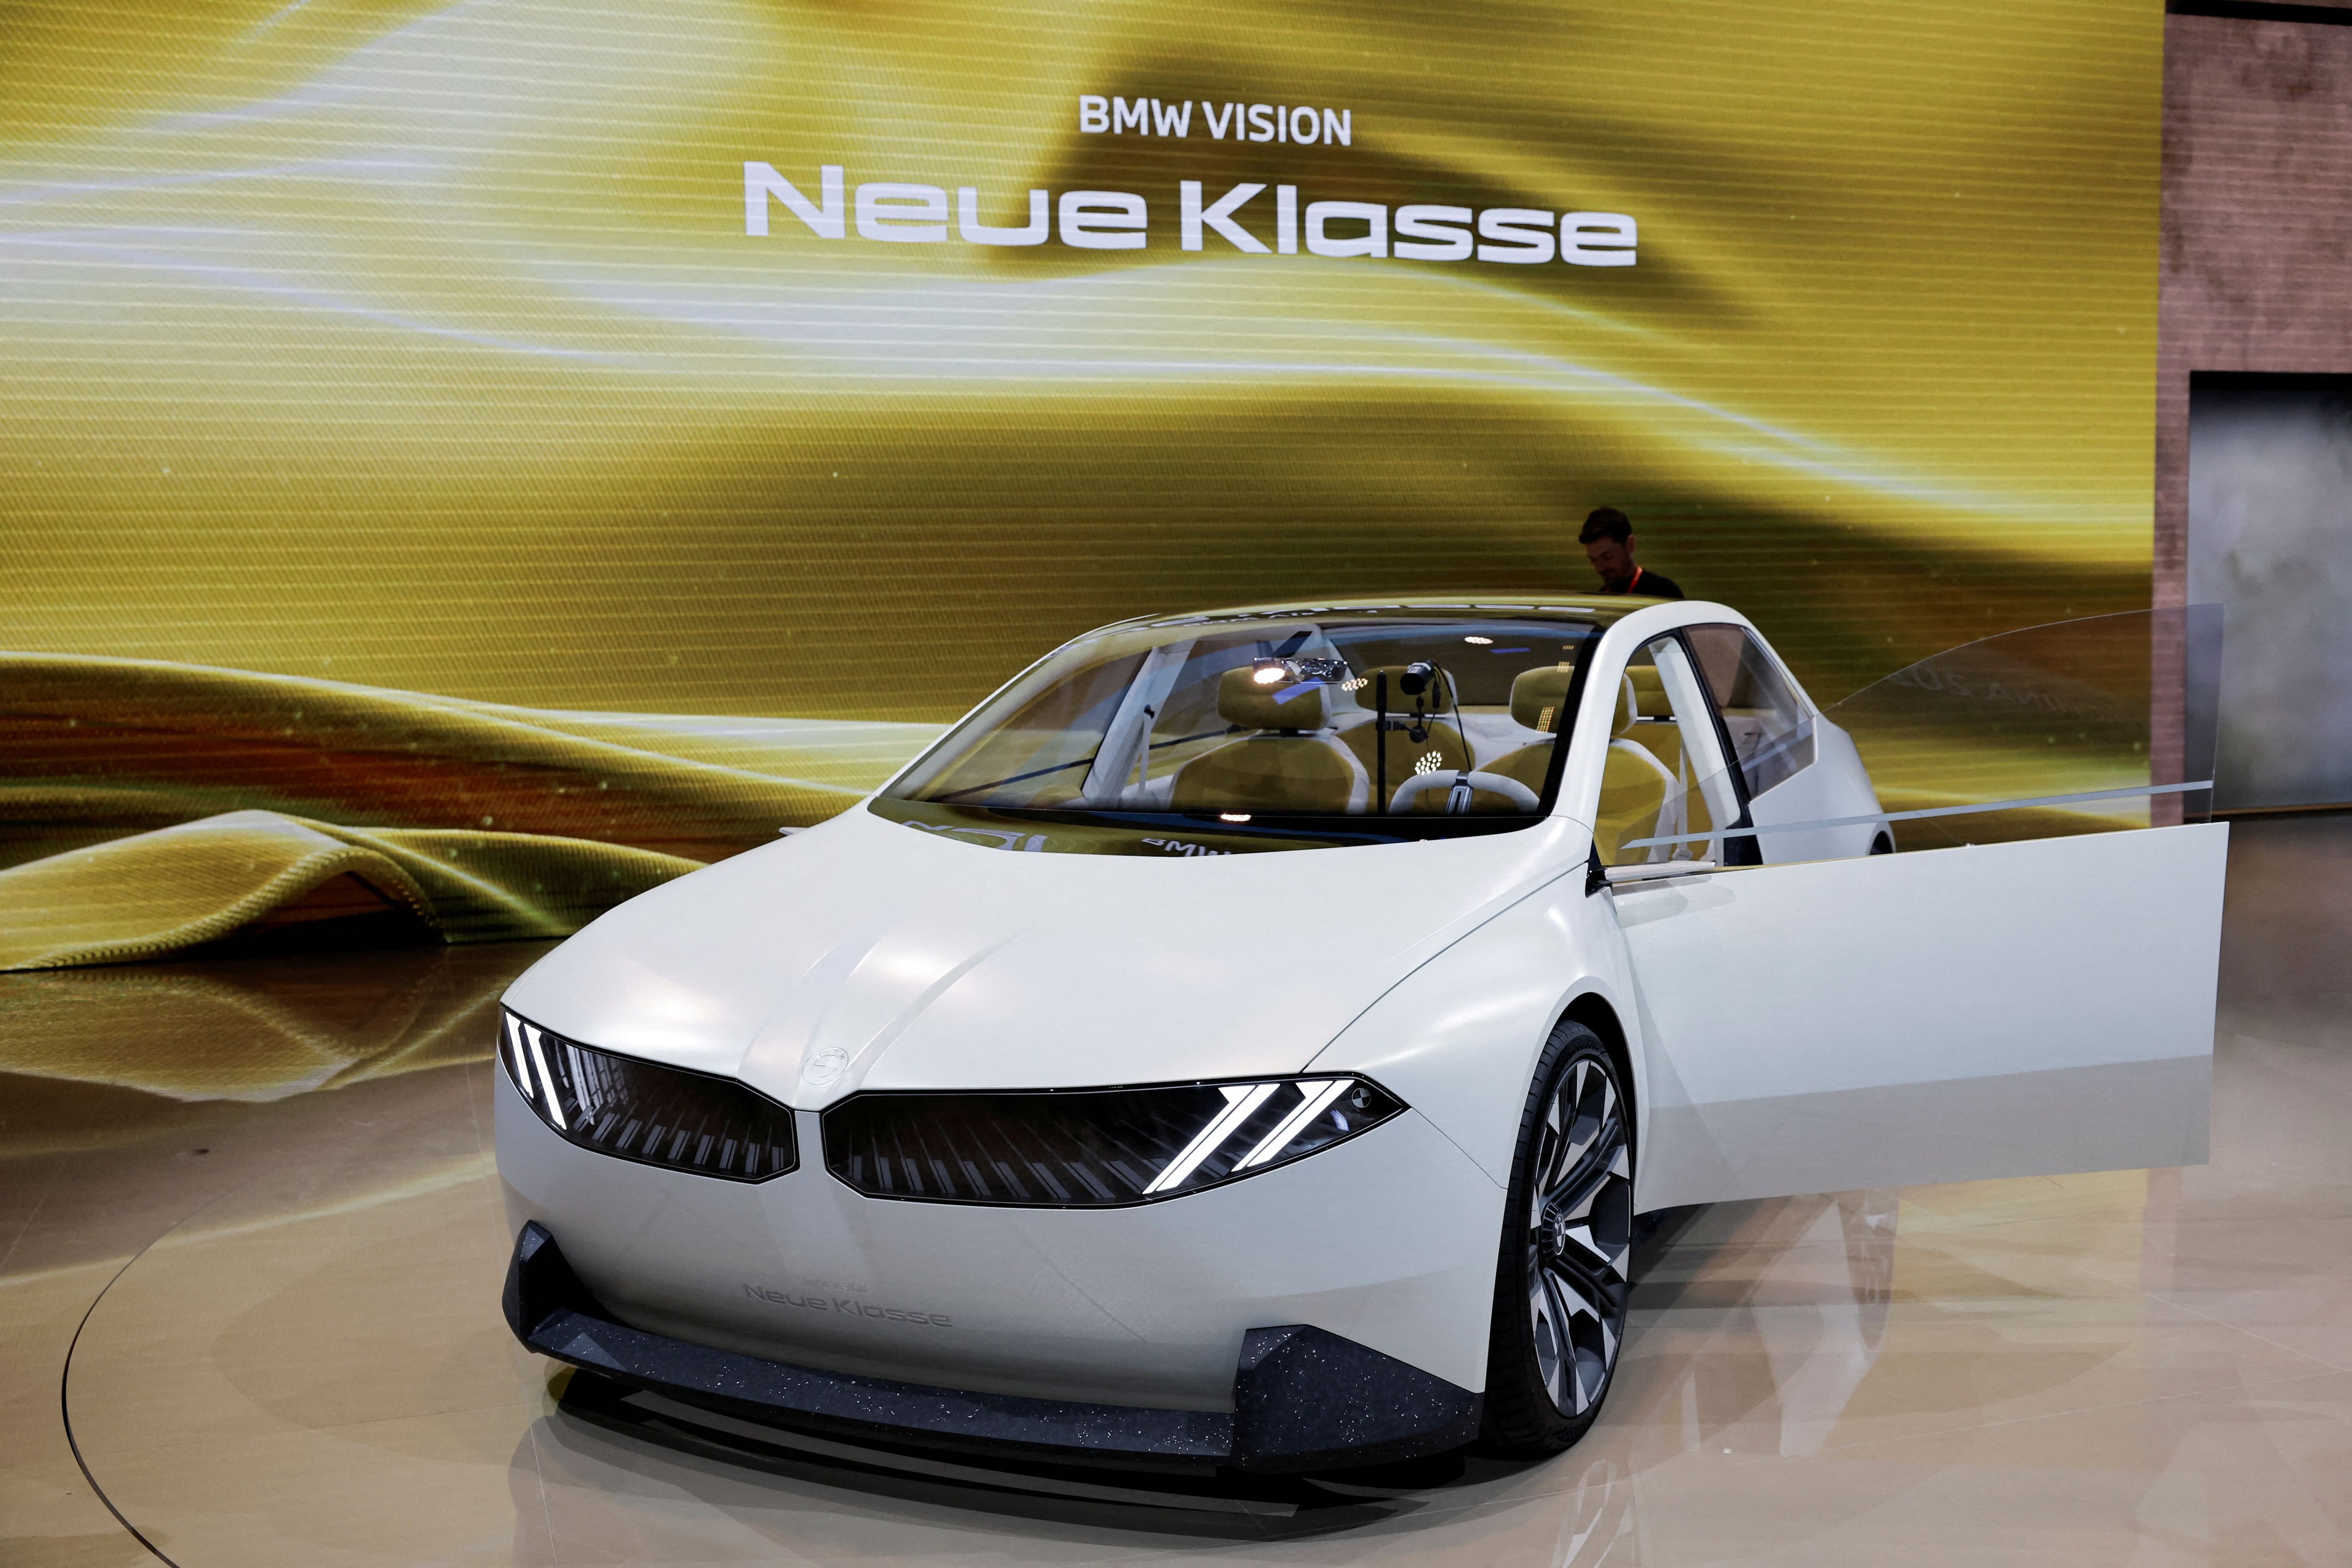 BMW también está presentando otros próximos modelos en distintos eventos como el Salón del Automóvil en Beijing. (Foto: REUTERS/Tingshu Wang/File Photo)